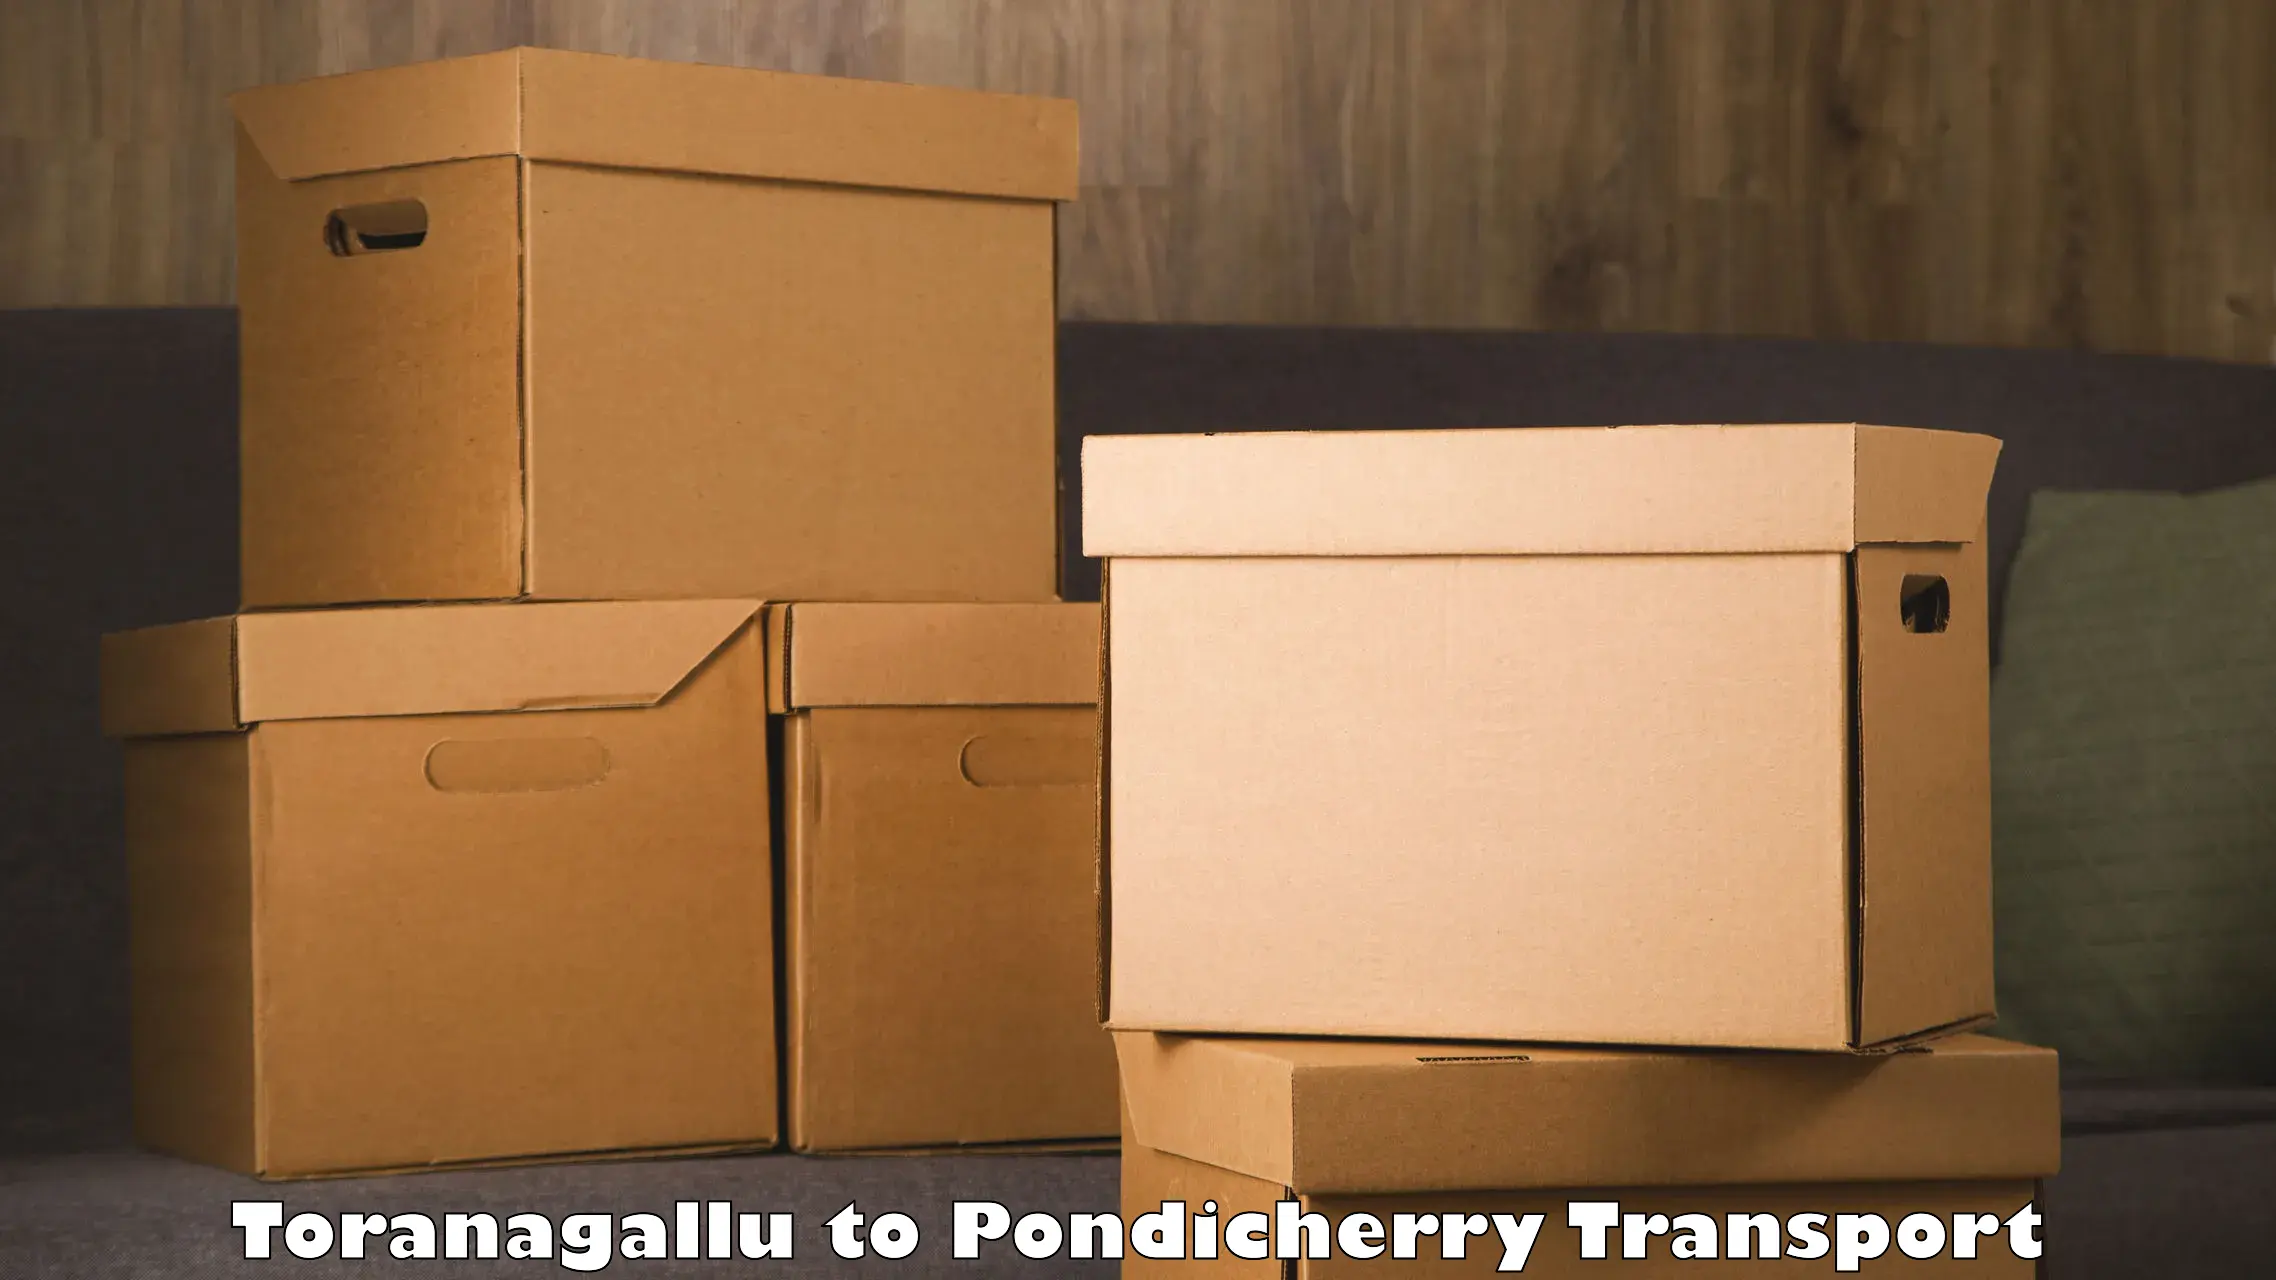 Two wheeler parcel service Toranagallu to Pondicherry